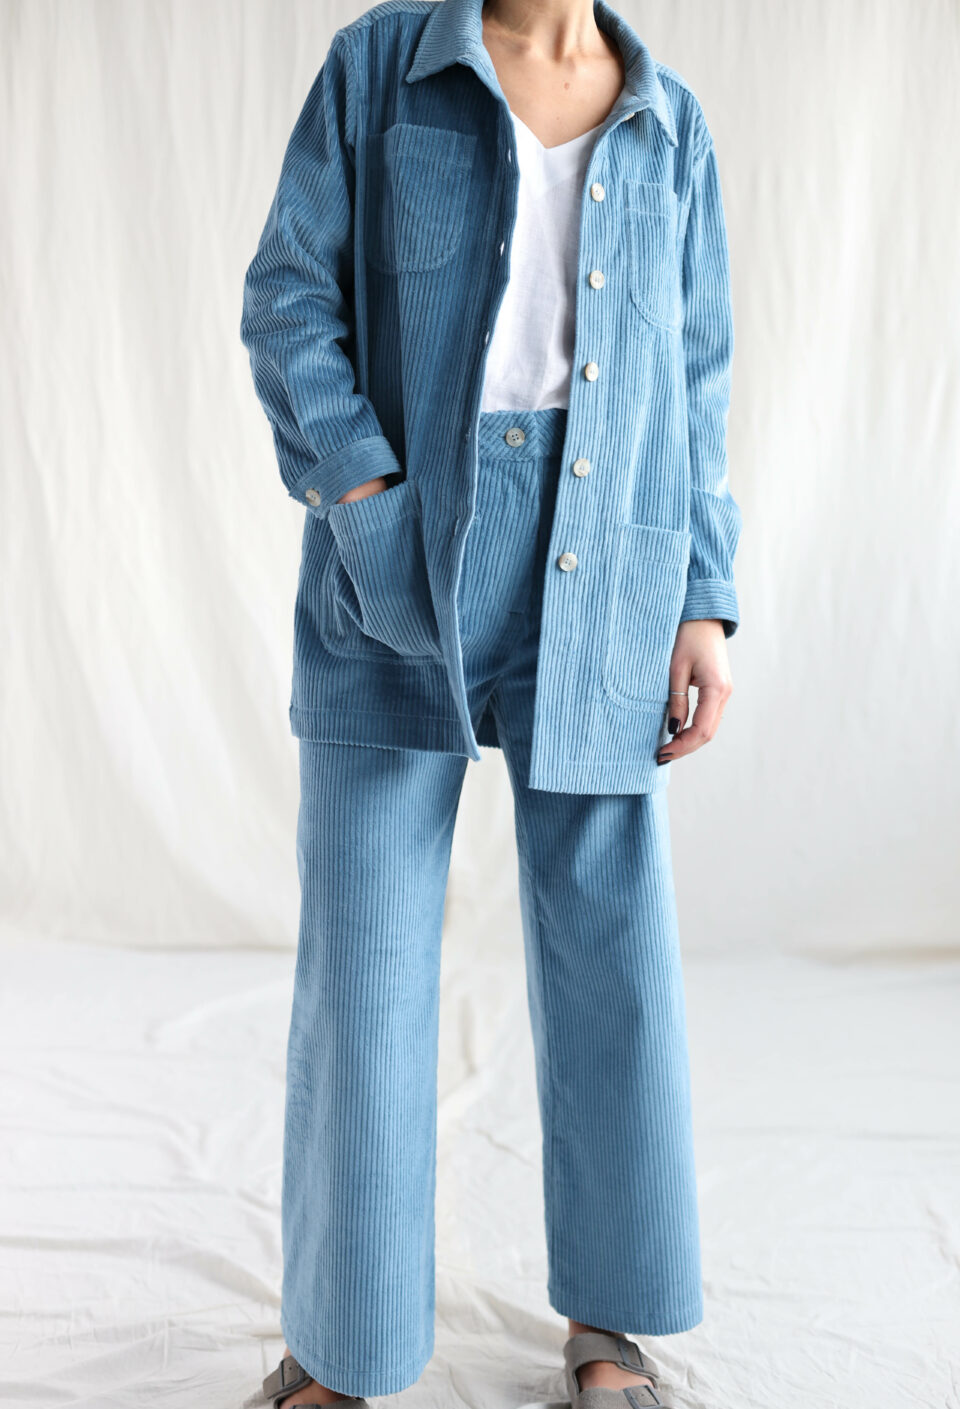 Light blue workwear style cord jacket | Jacket | Light Blue | Sustainable clothing | OffOn clothing